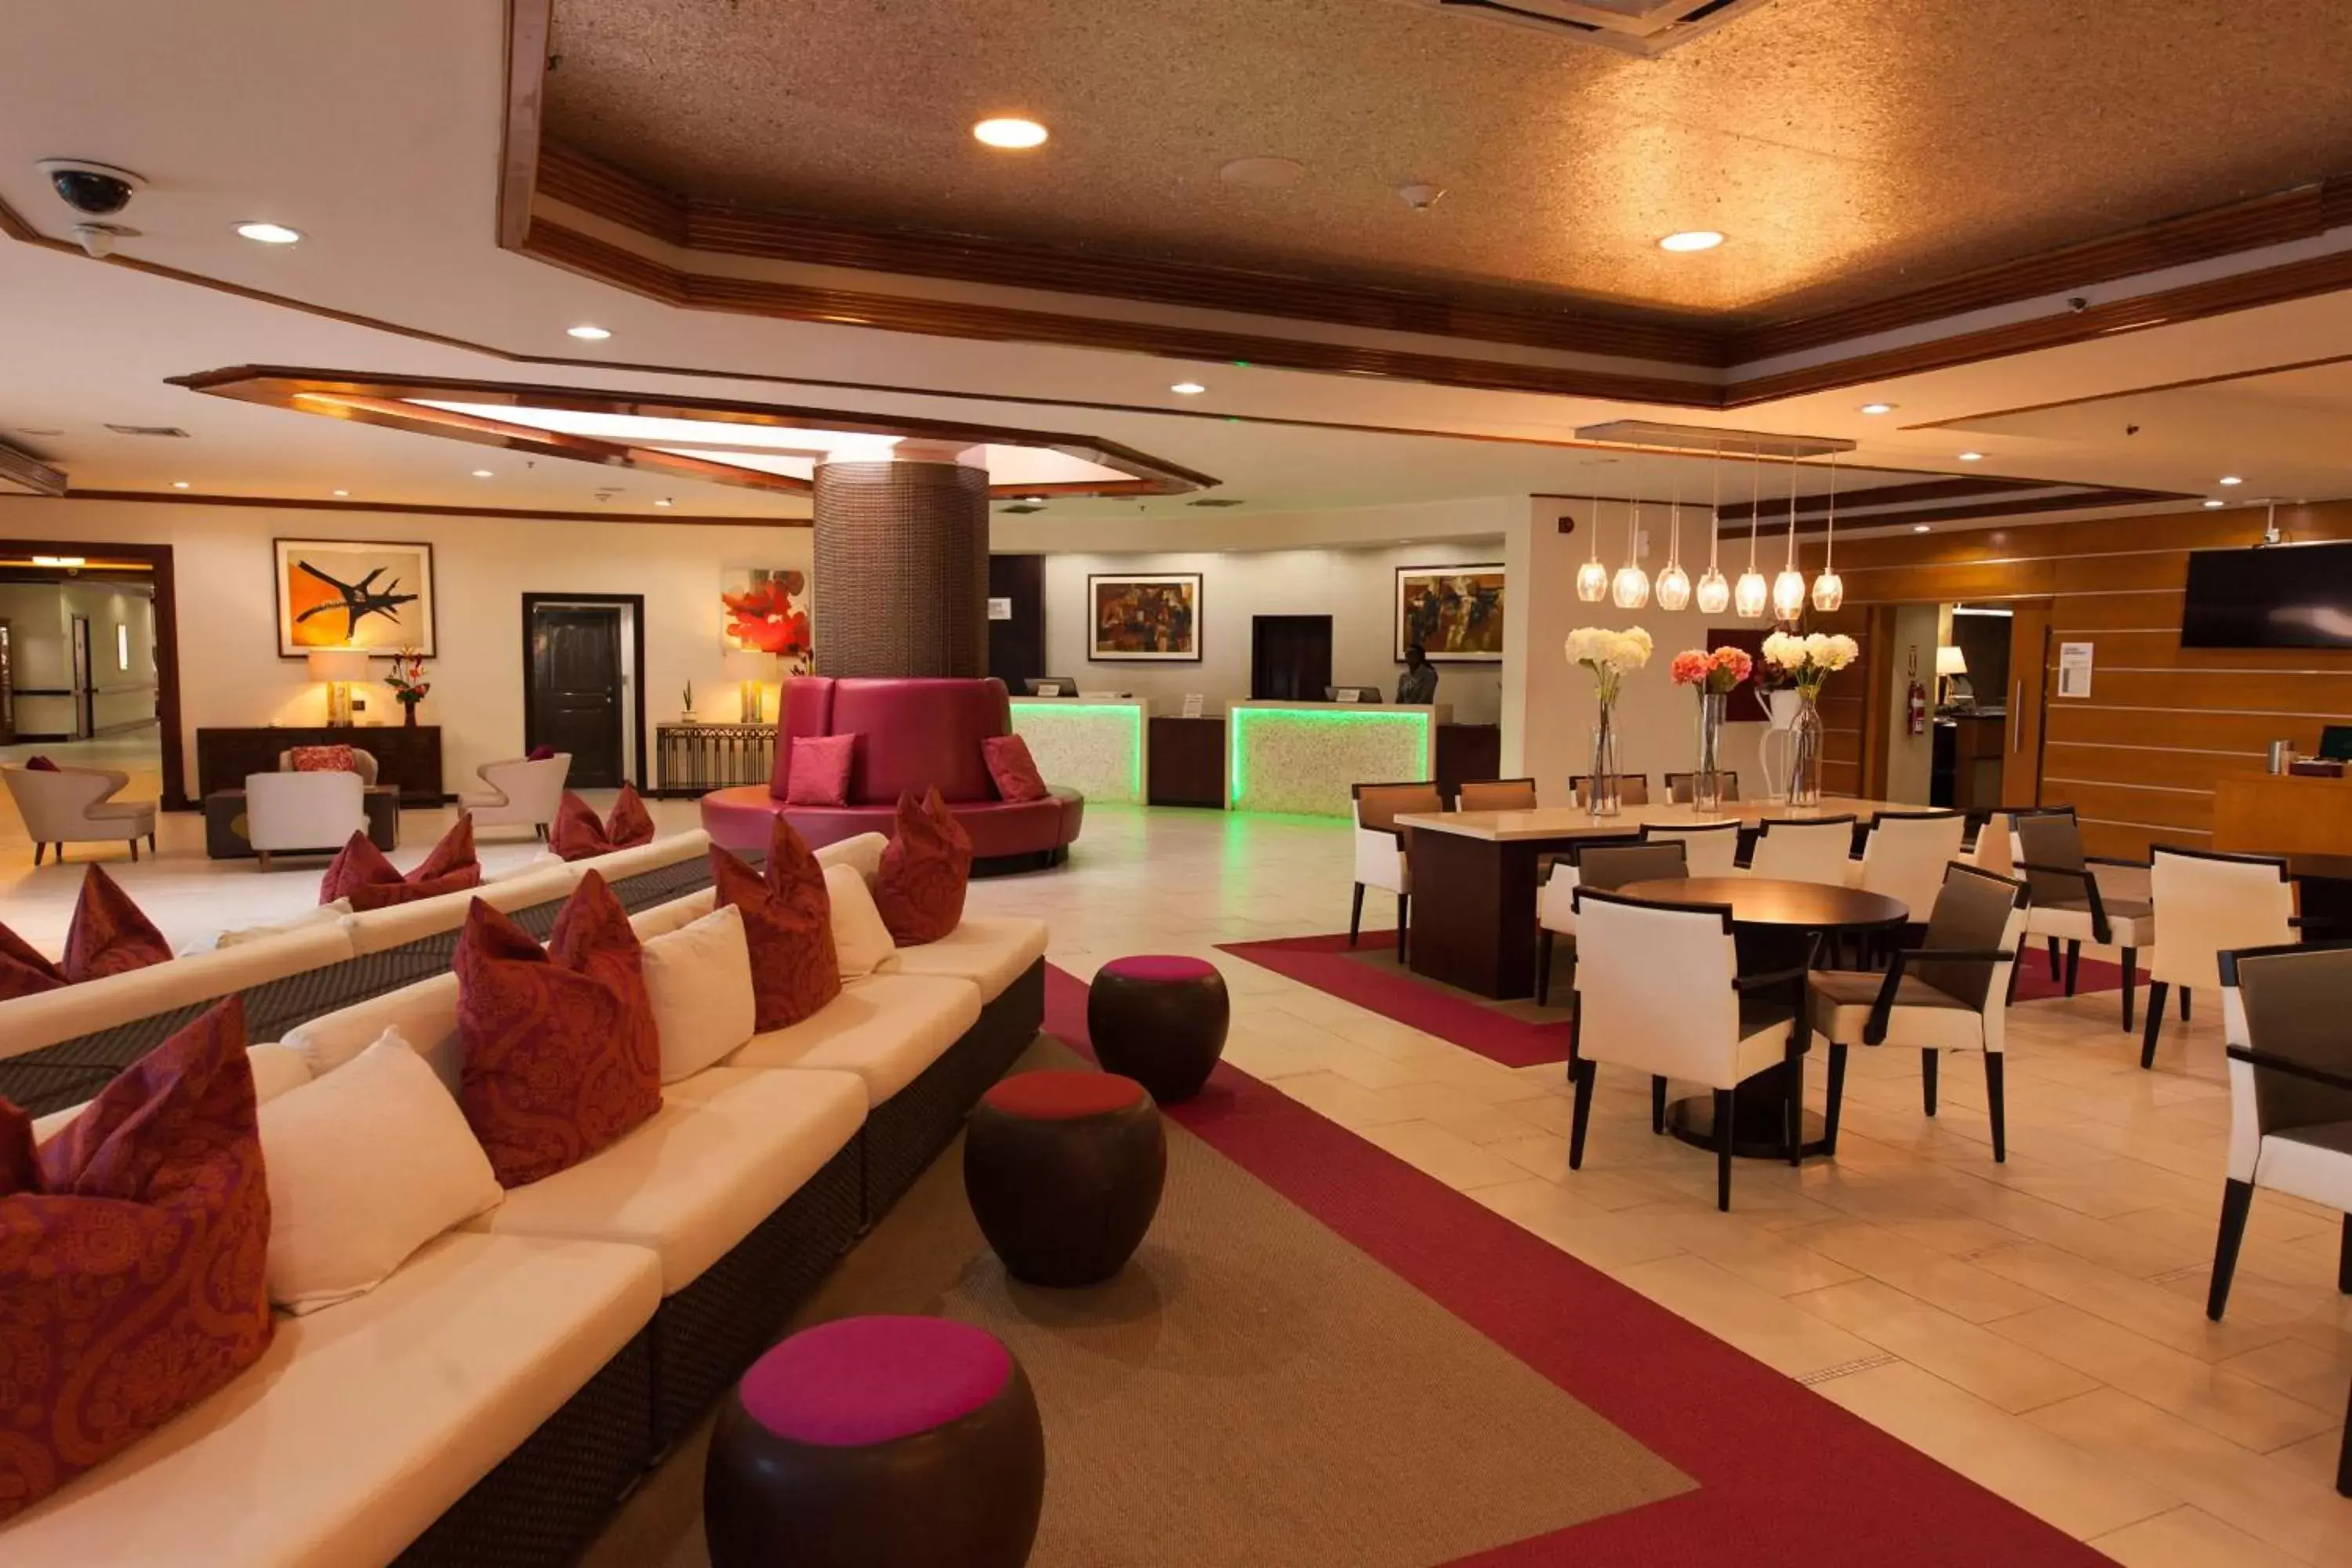 Lobby or reception in Radisson Hotel Trinidad